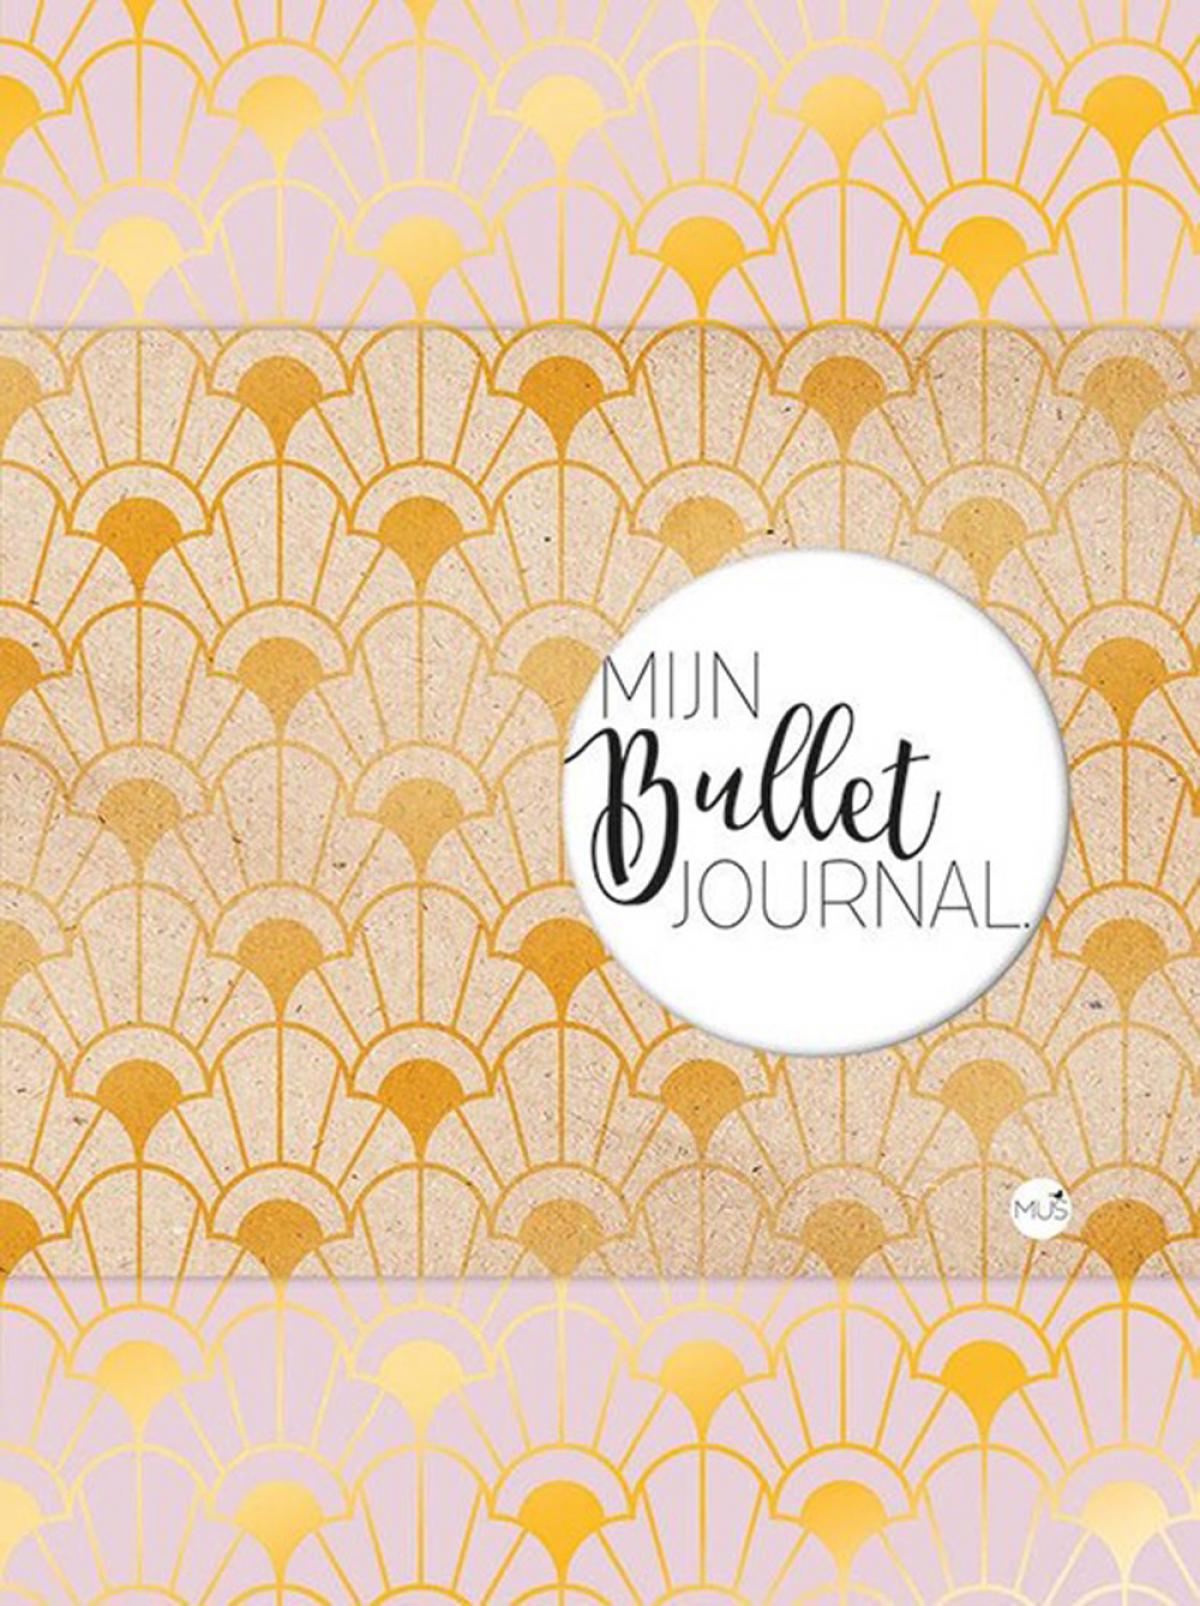 'Mijn Bullet Journal' van Mus